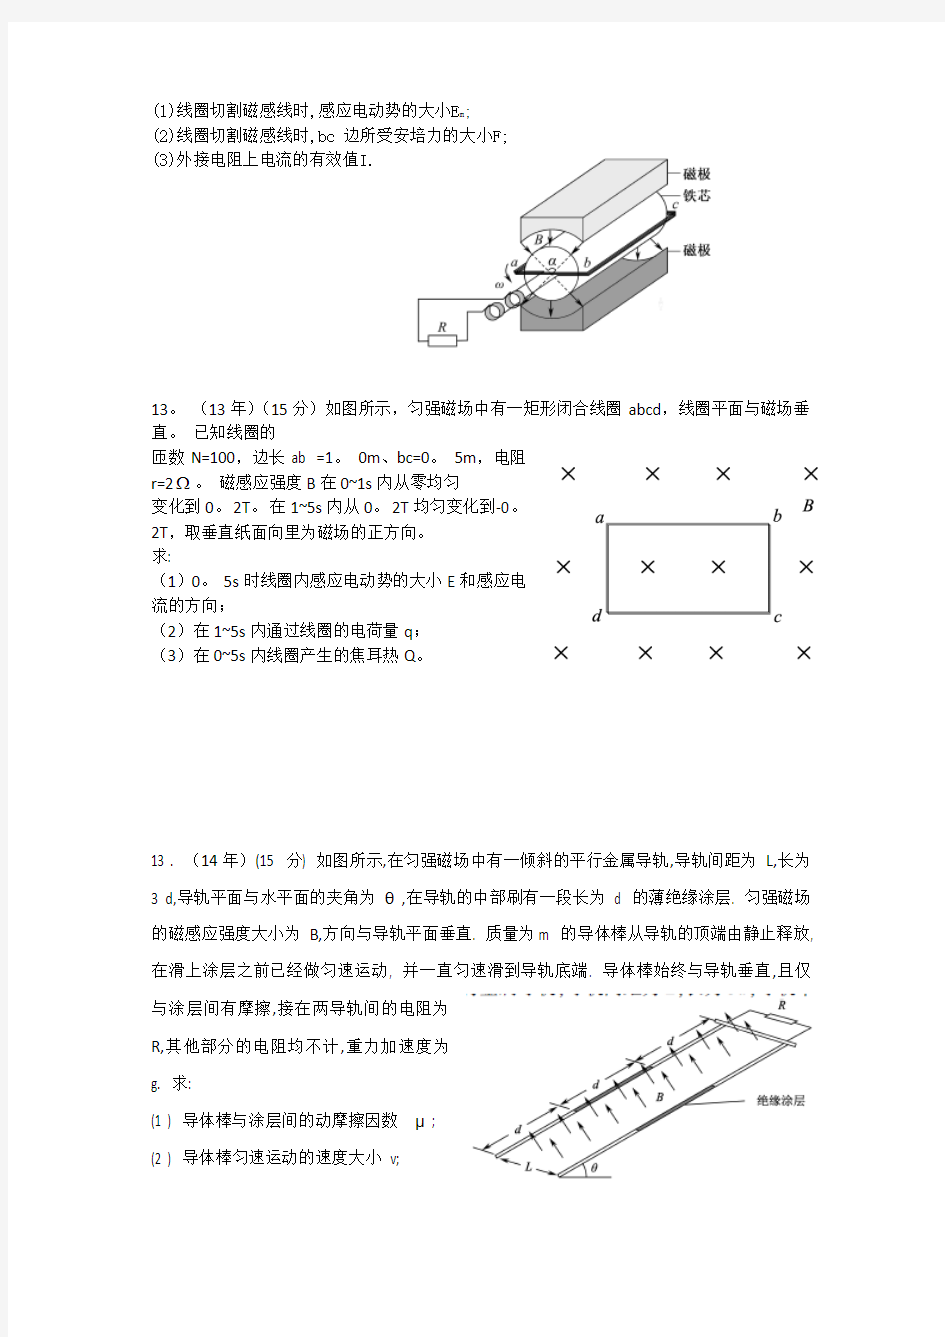 2010-2015江苏高考物理计算题试卷汇编